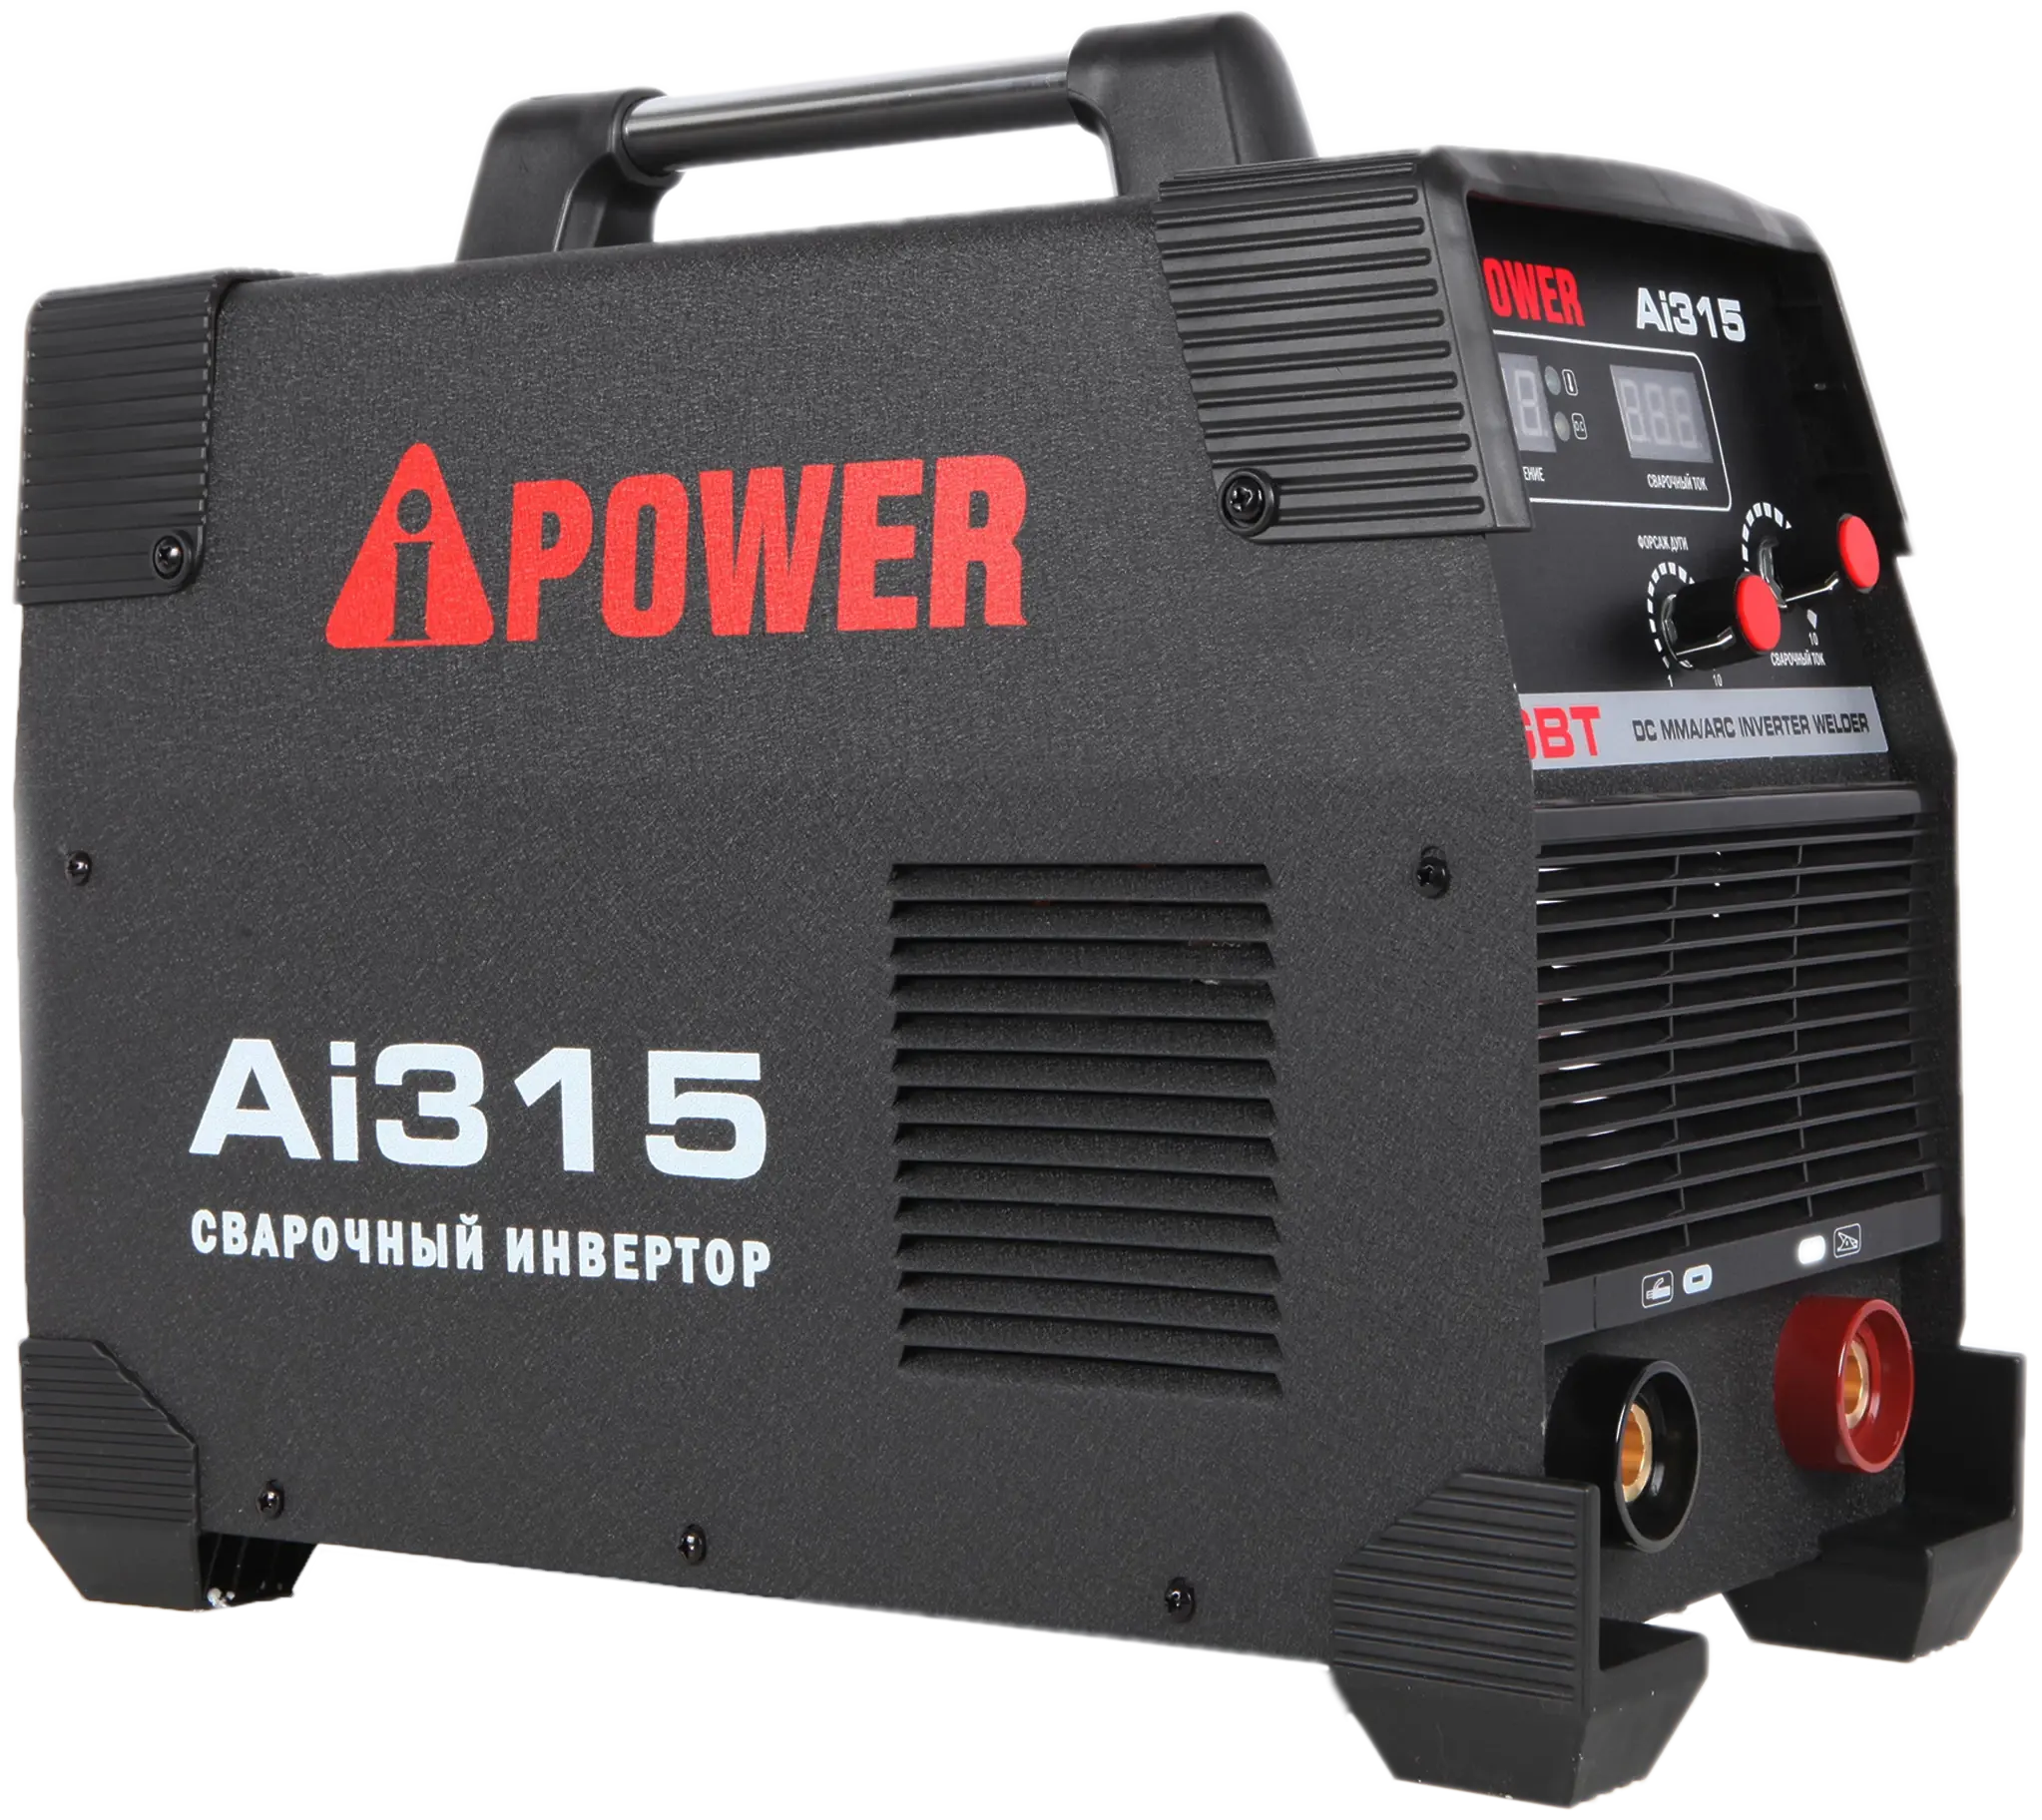 Инверторный сварочный аппарат A-IPOWER AI315 Гарантия 4 года Официальный магазин